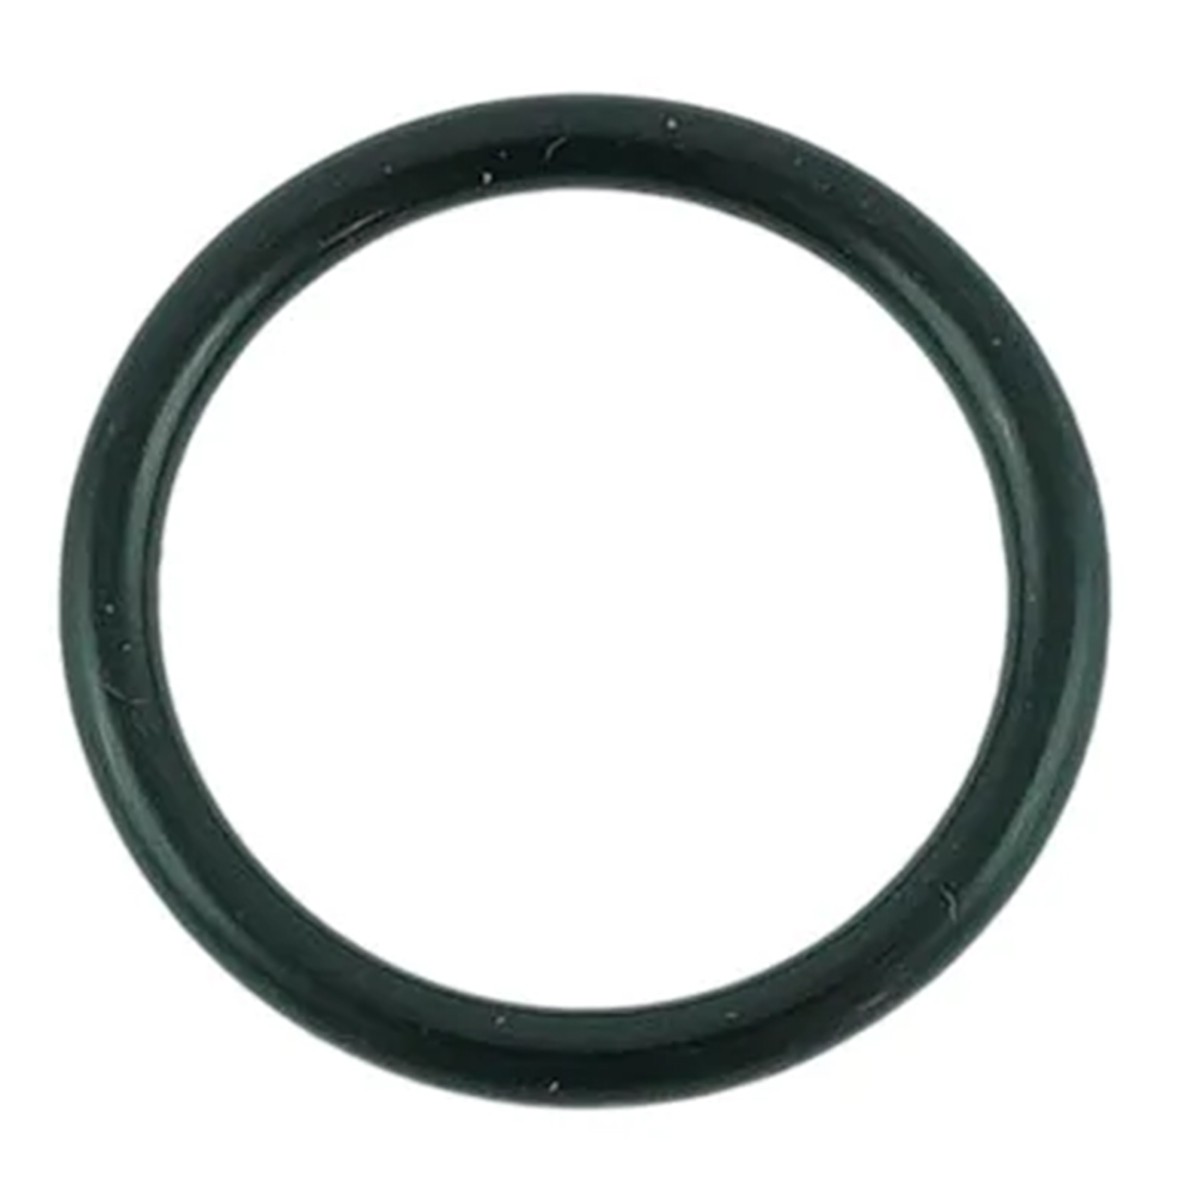 O-ring 17.80 x 2.40 mm LS XJ25 / S801018010 / 40029207